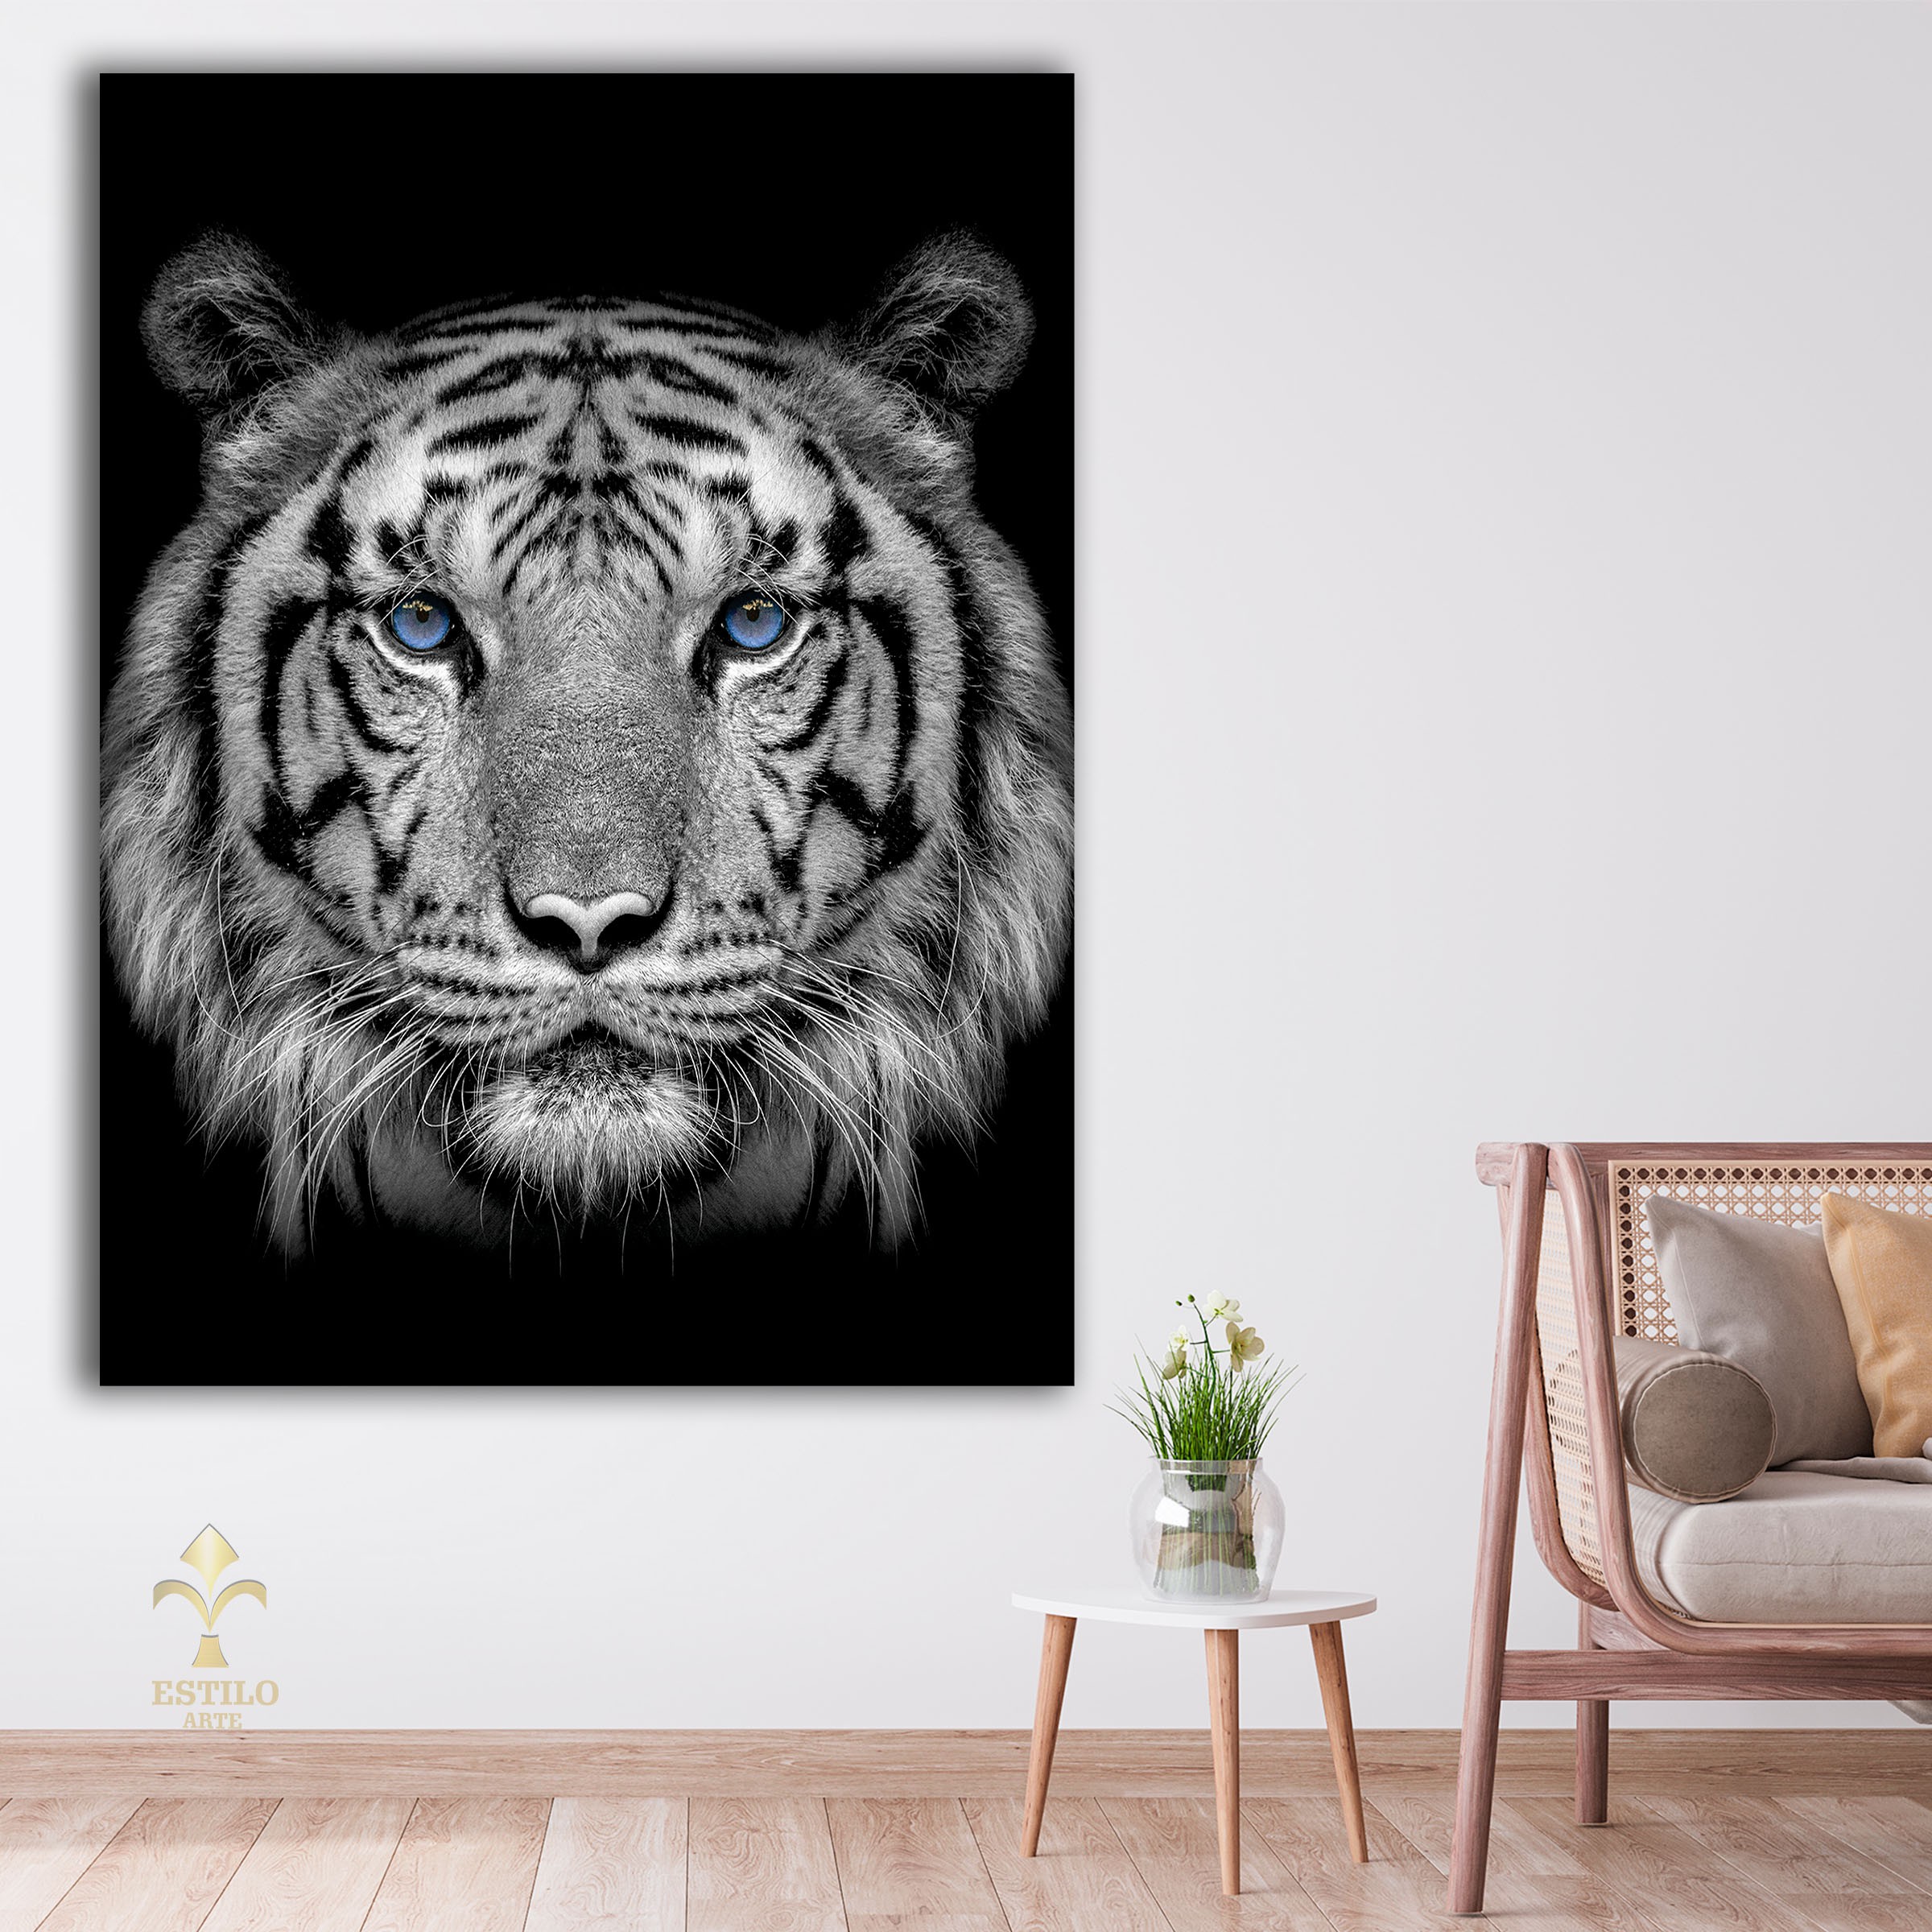 Quadro Decorativo Tigre Preto e Branco Olhos Azuis